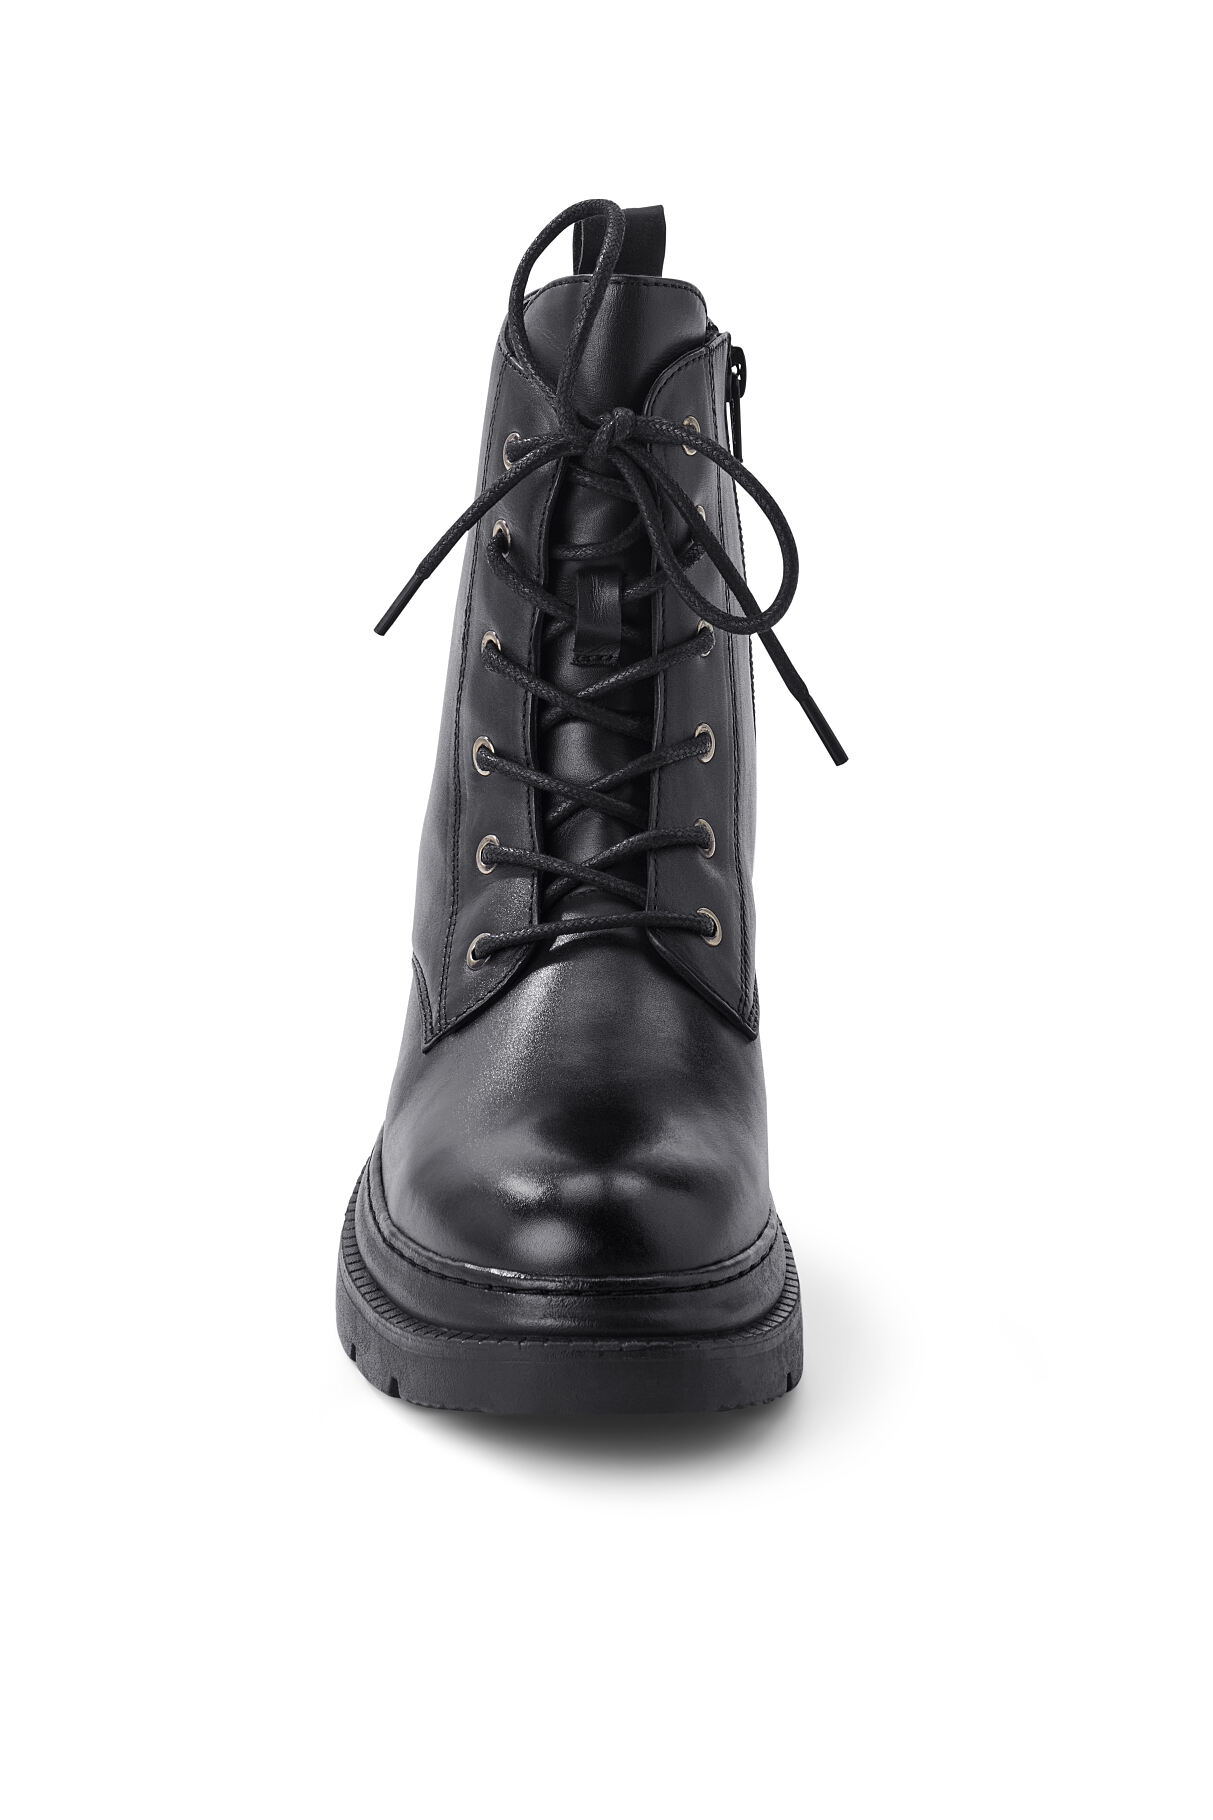 133515 Leder-Boots FS 1 47.23